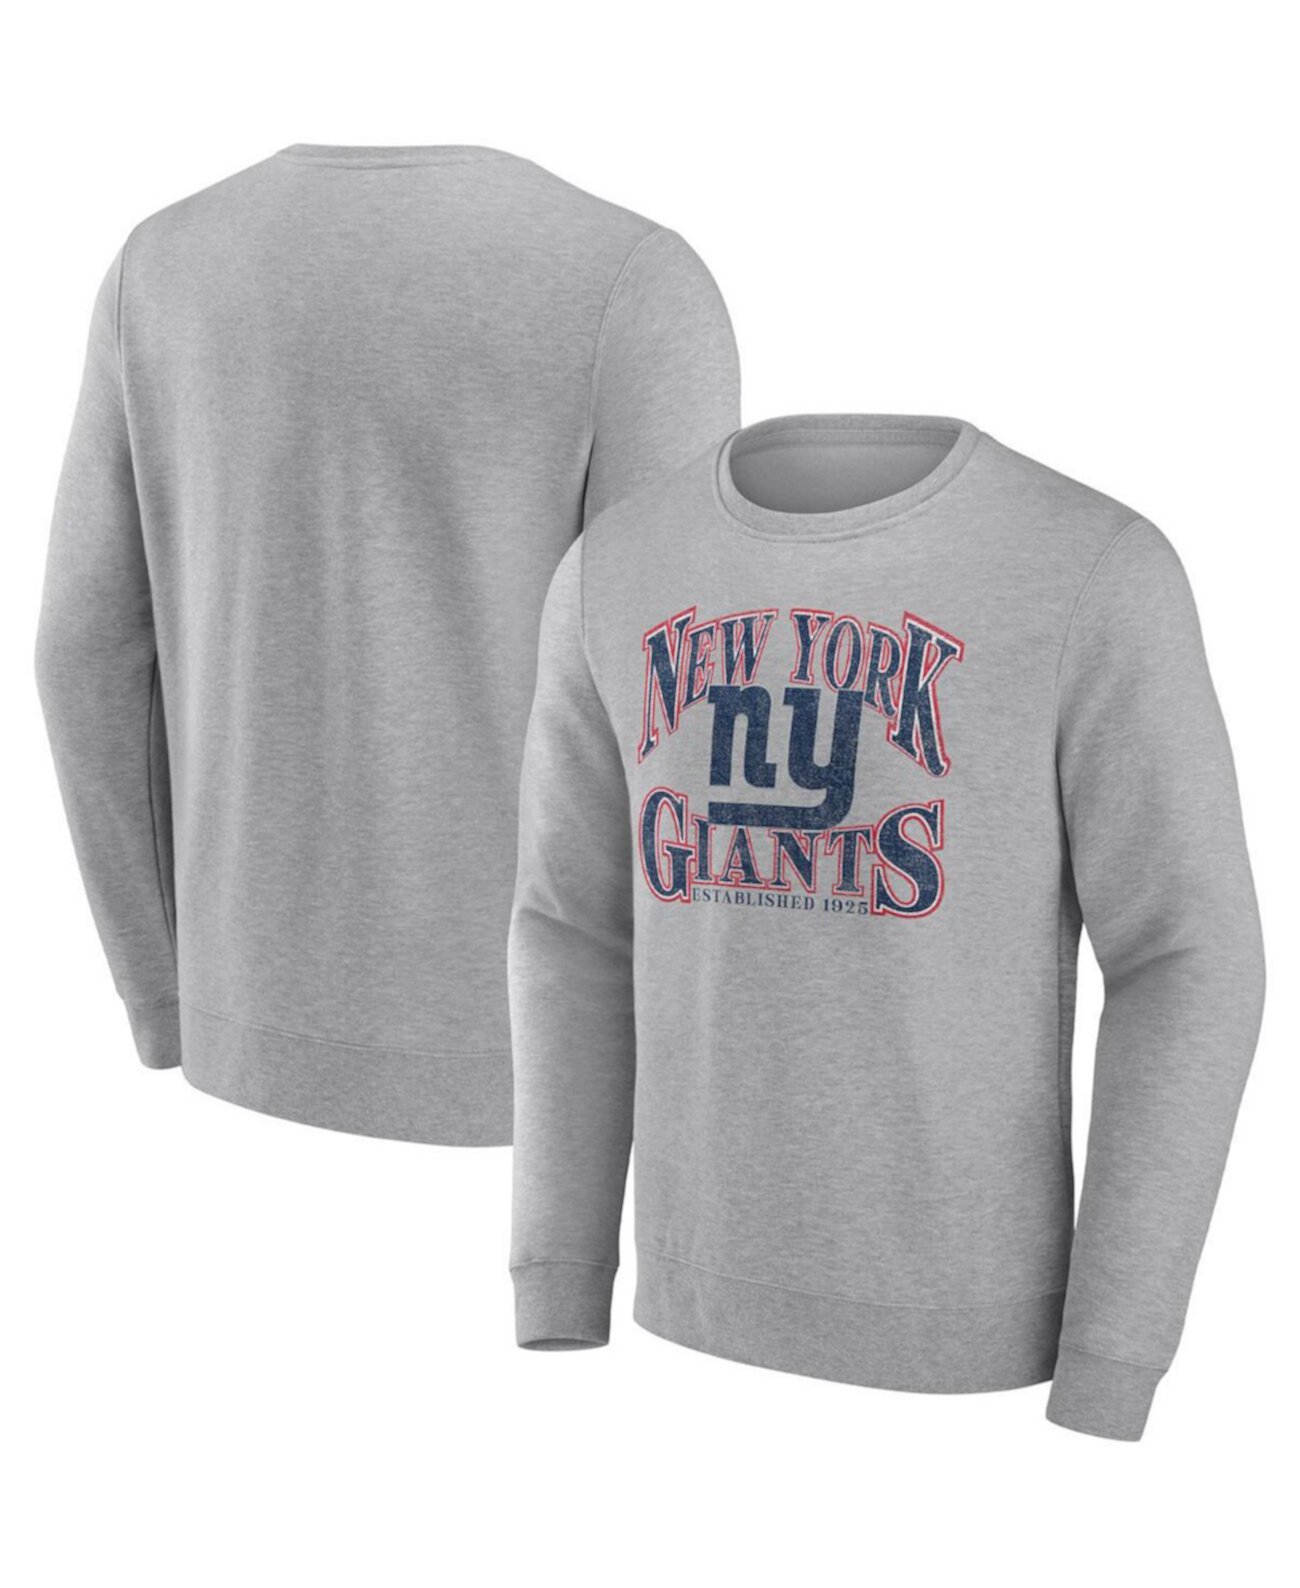 Мужской пуловер с фирменным рисунком из меланжевого цвета New York Giants Playability Fanatics